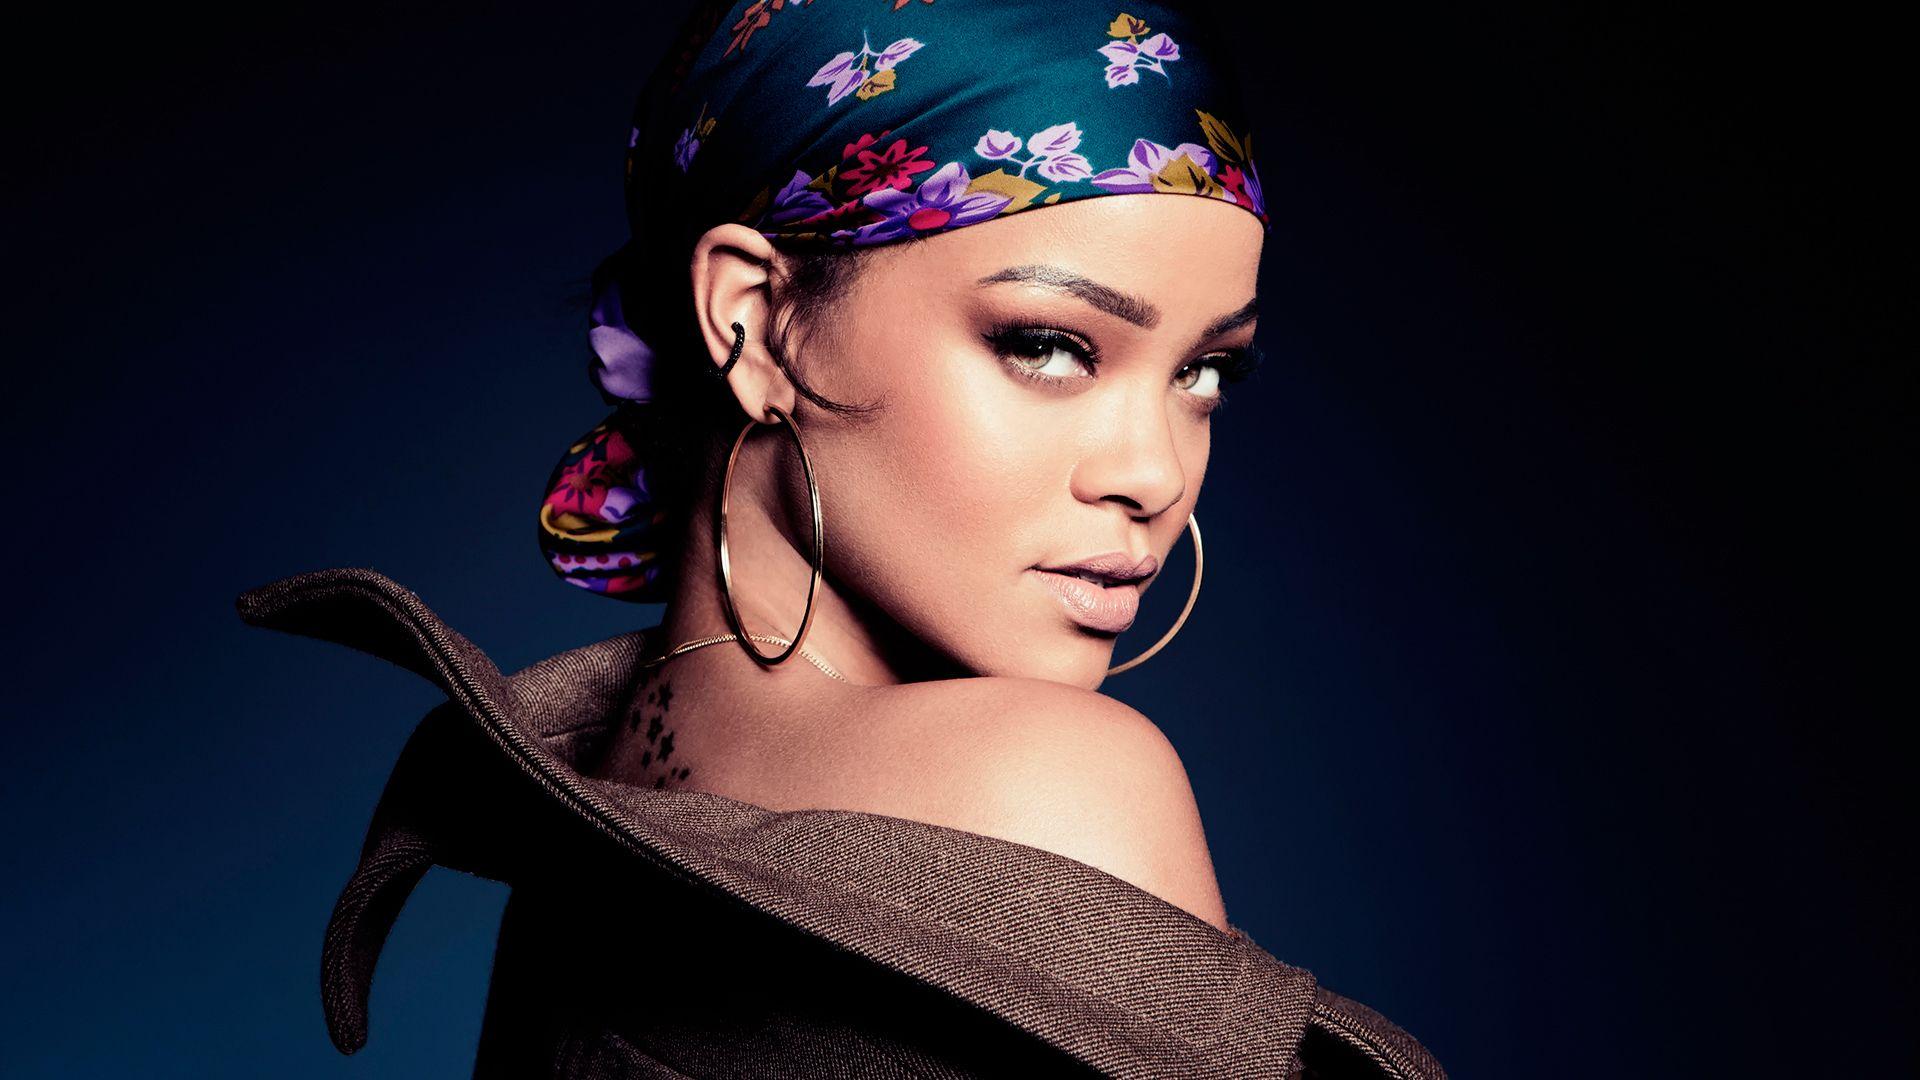 Rihanna 2015 Wallpaper